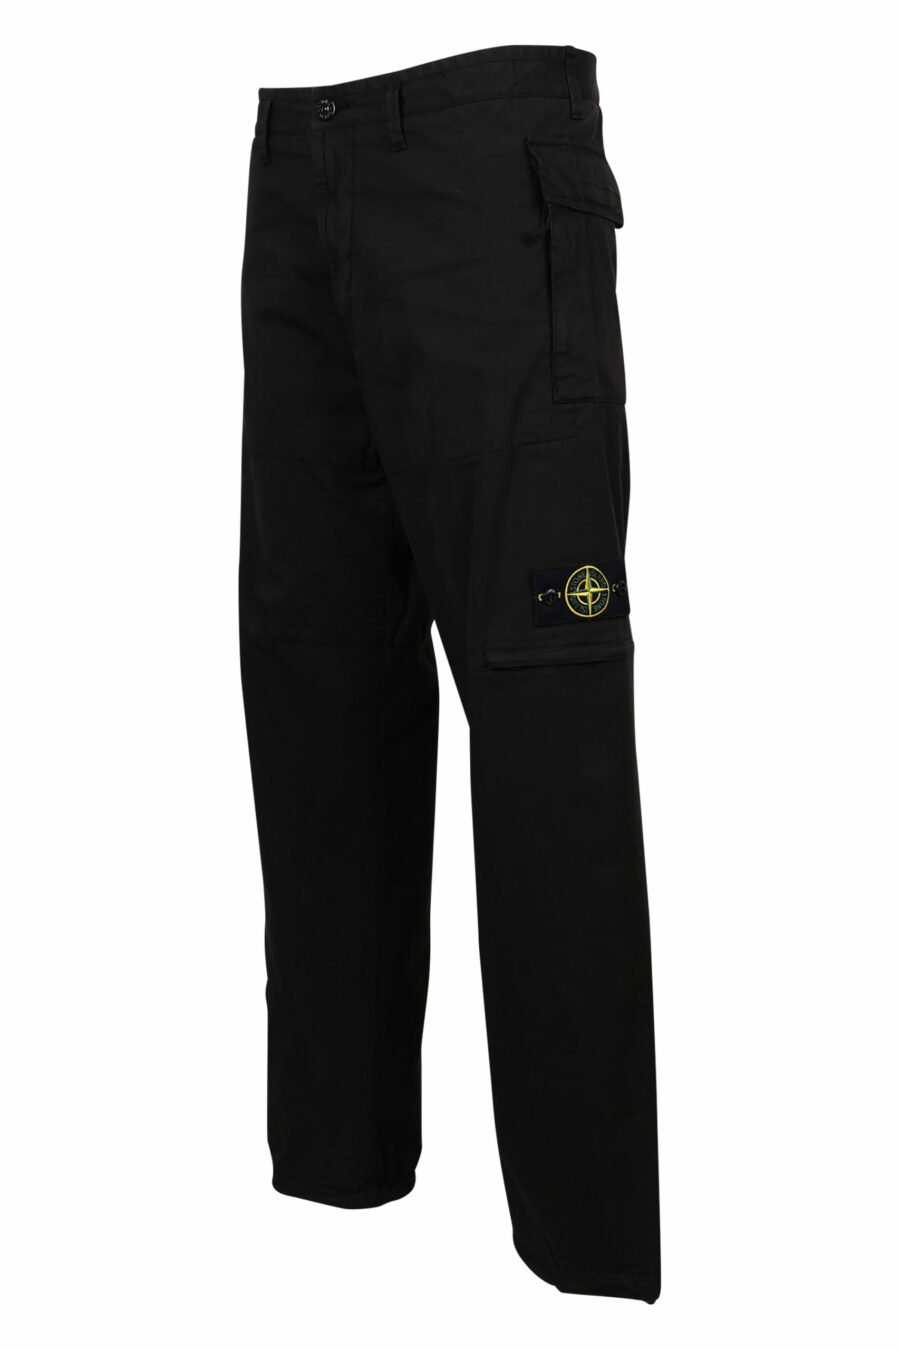 Pantalon cargo noir avec poches et logo - 8052572731846 1 échelle